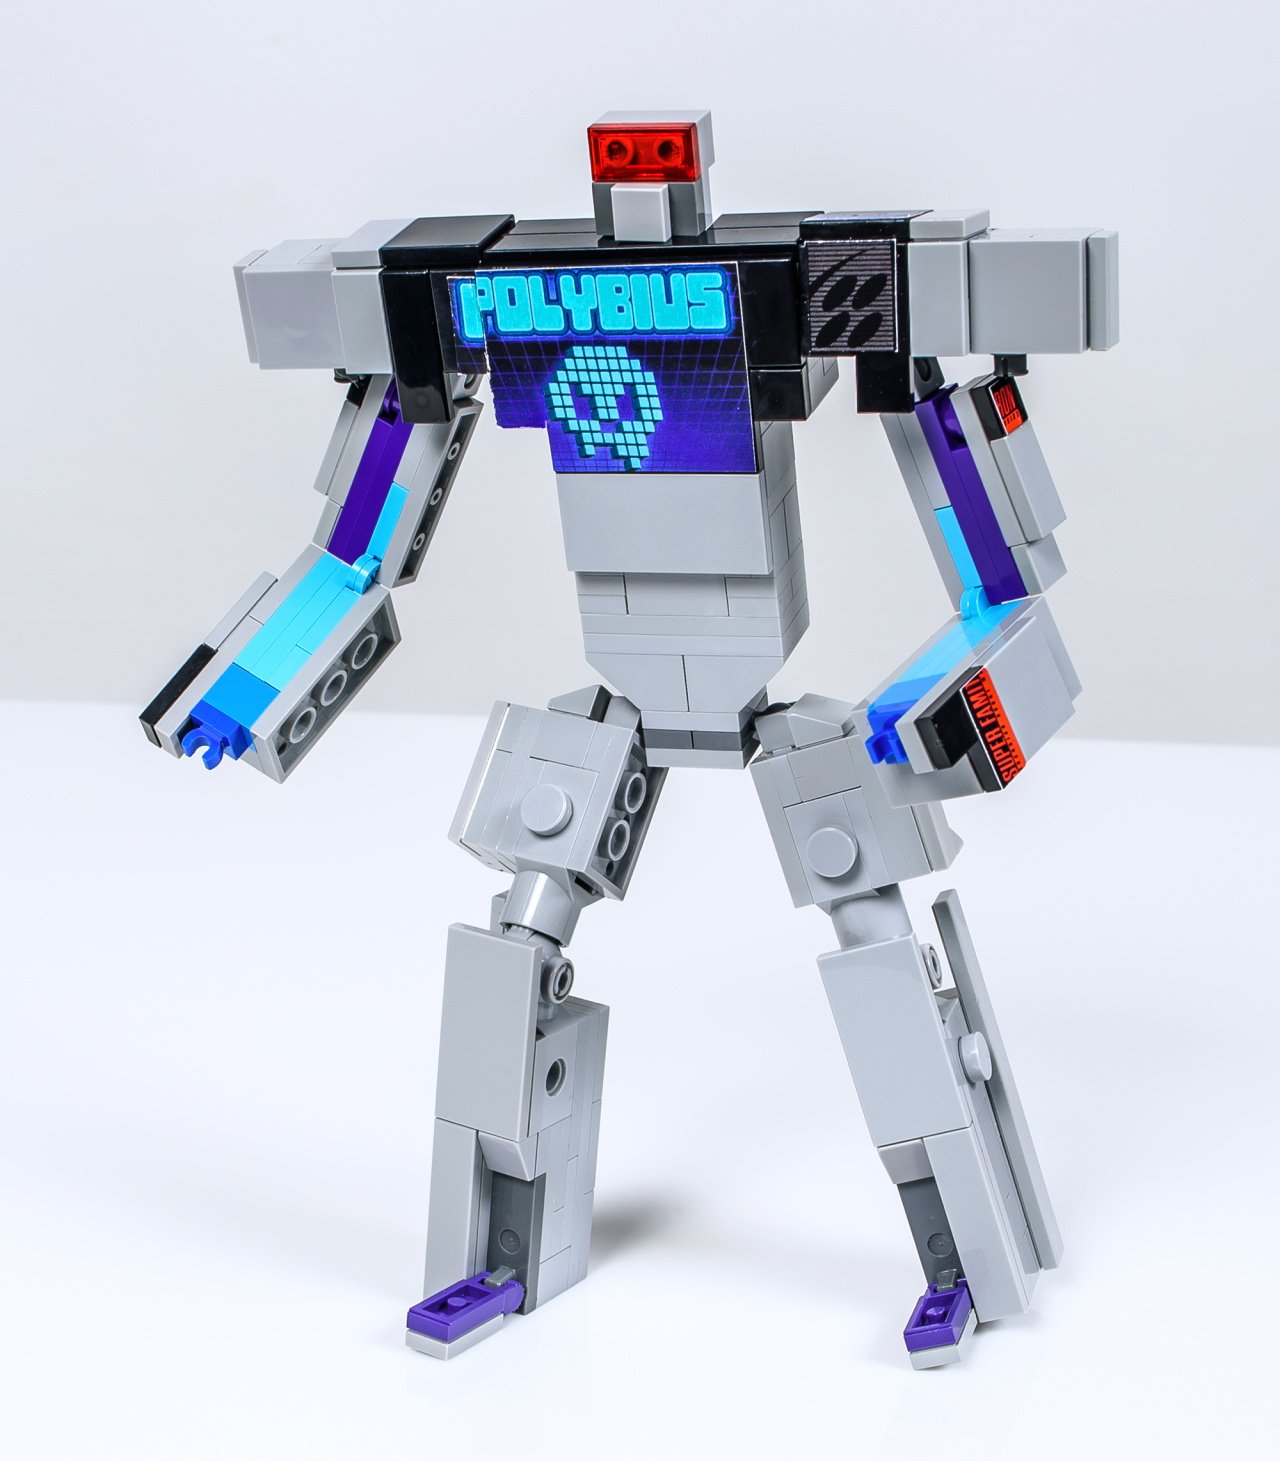 Lego Transforming Robots, Lego Compatible Robots